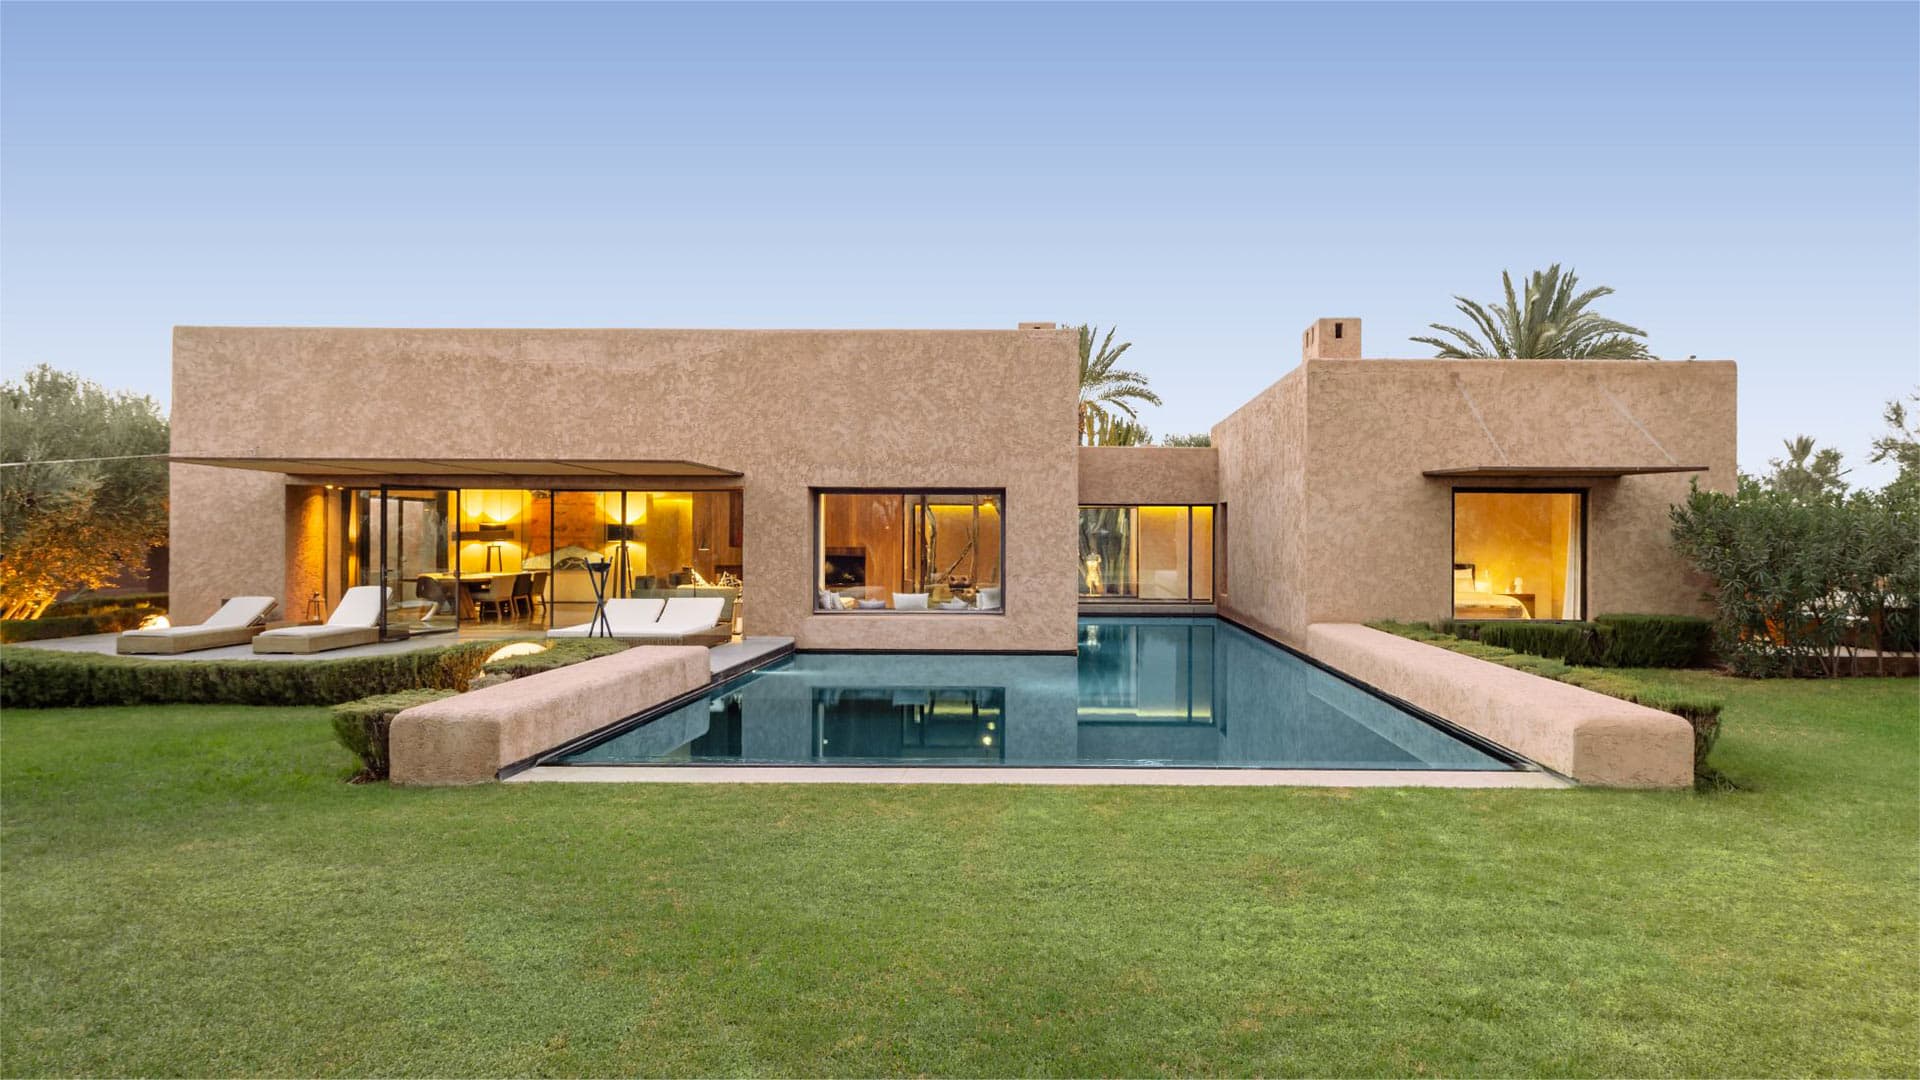 Acheter villa Marrakech : La liste de contrôle ultime